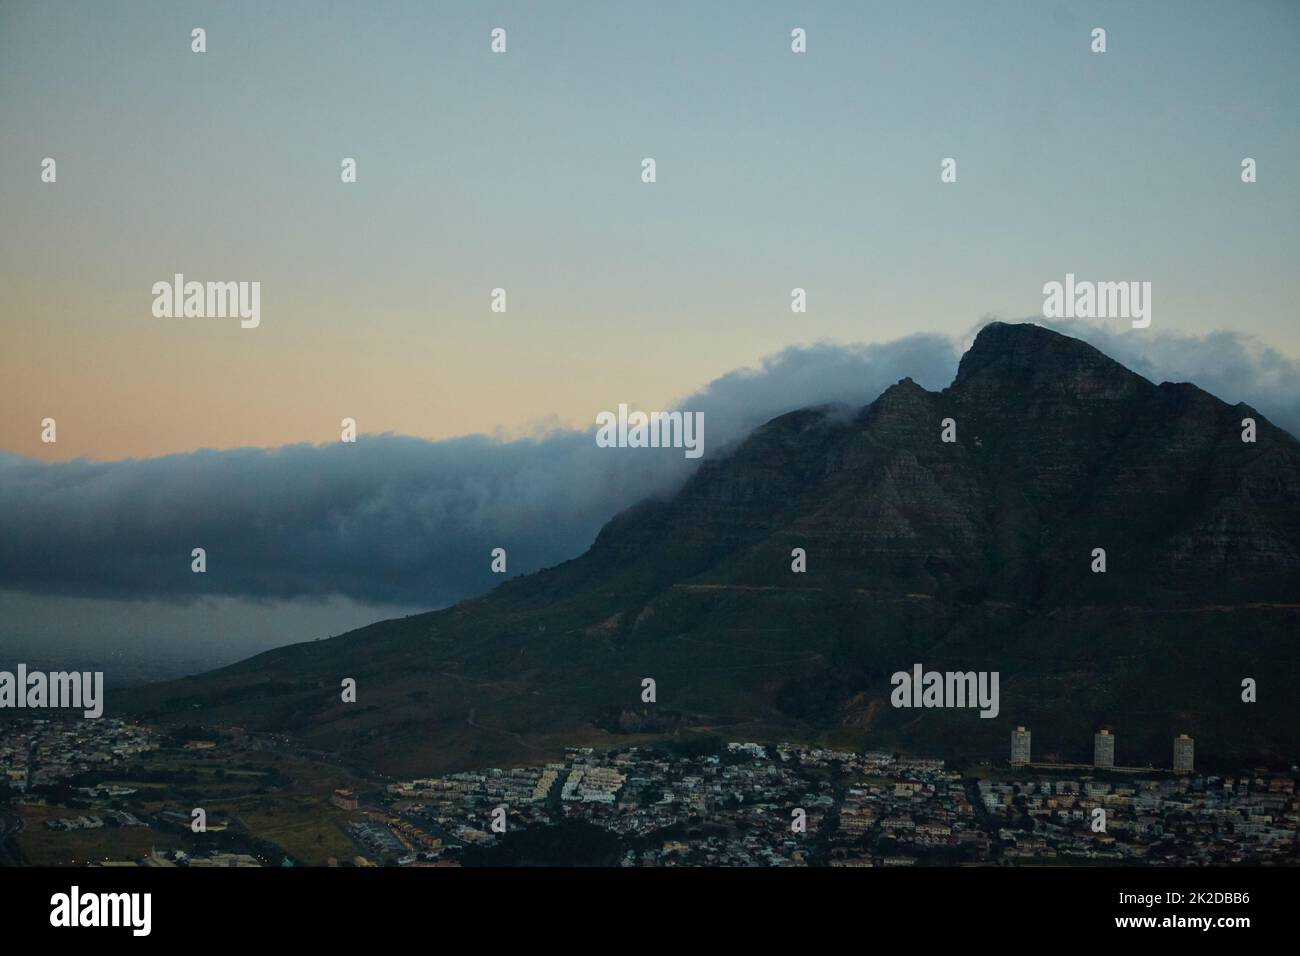 Paisaje rocoso en el Cabo Occidental. Foto de las montañas de Ciudad del Cabo. Foto de stock